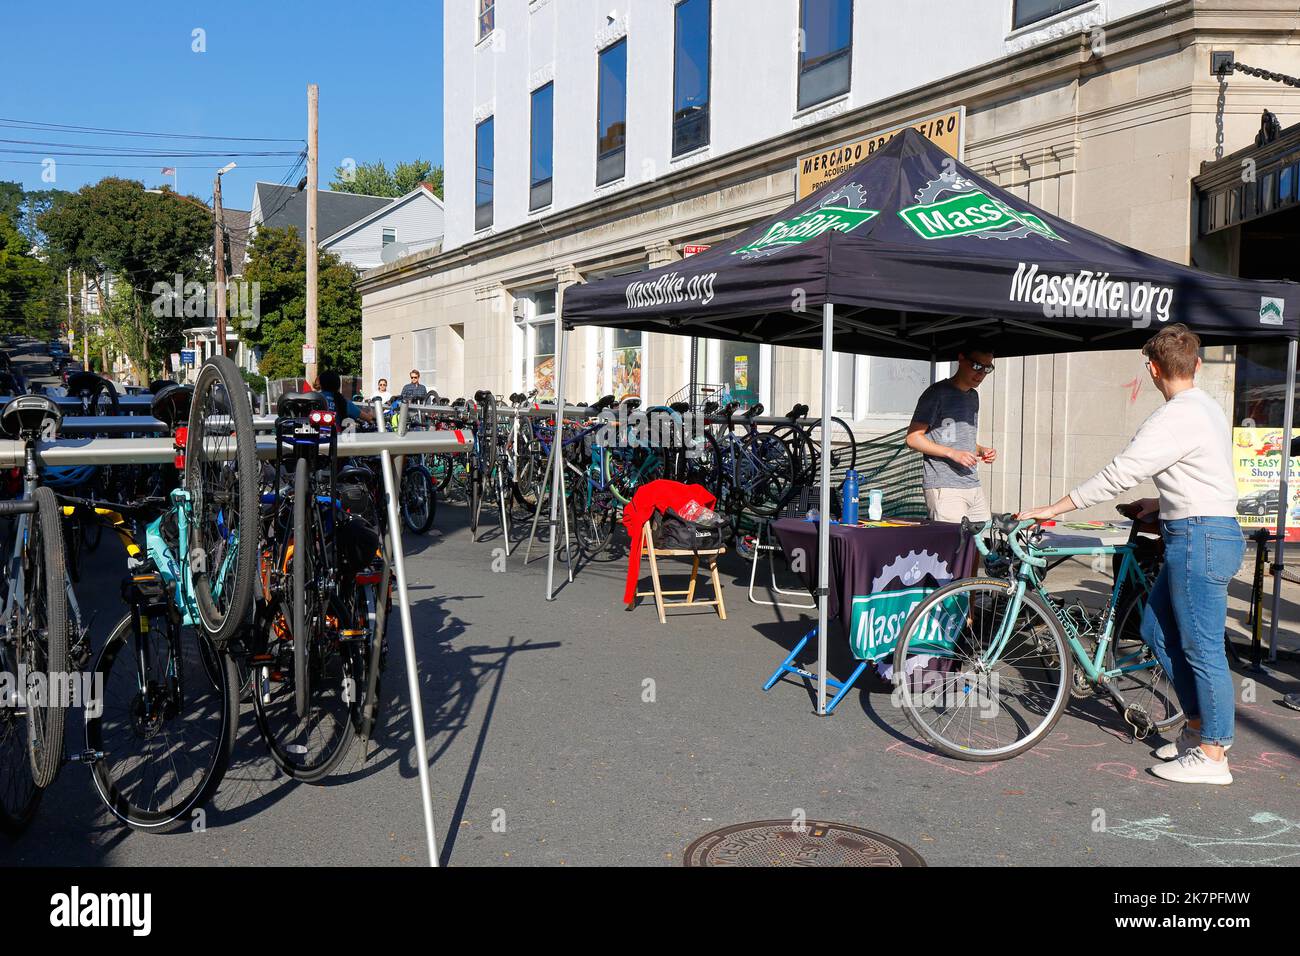 Les gens font la queue pour le valet à vélo, service de parking à vélo gratuit exploité par MassBike au festival What the Fluff à Somerville, Massachusetts Banque D'Images